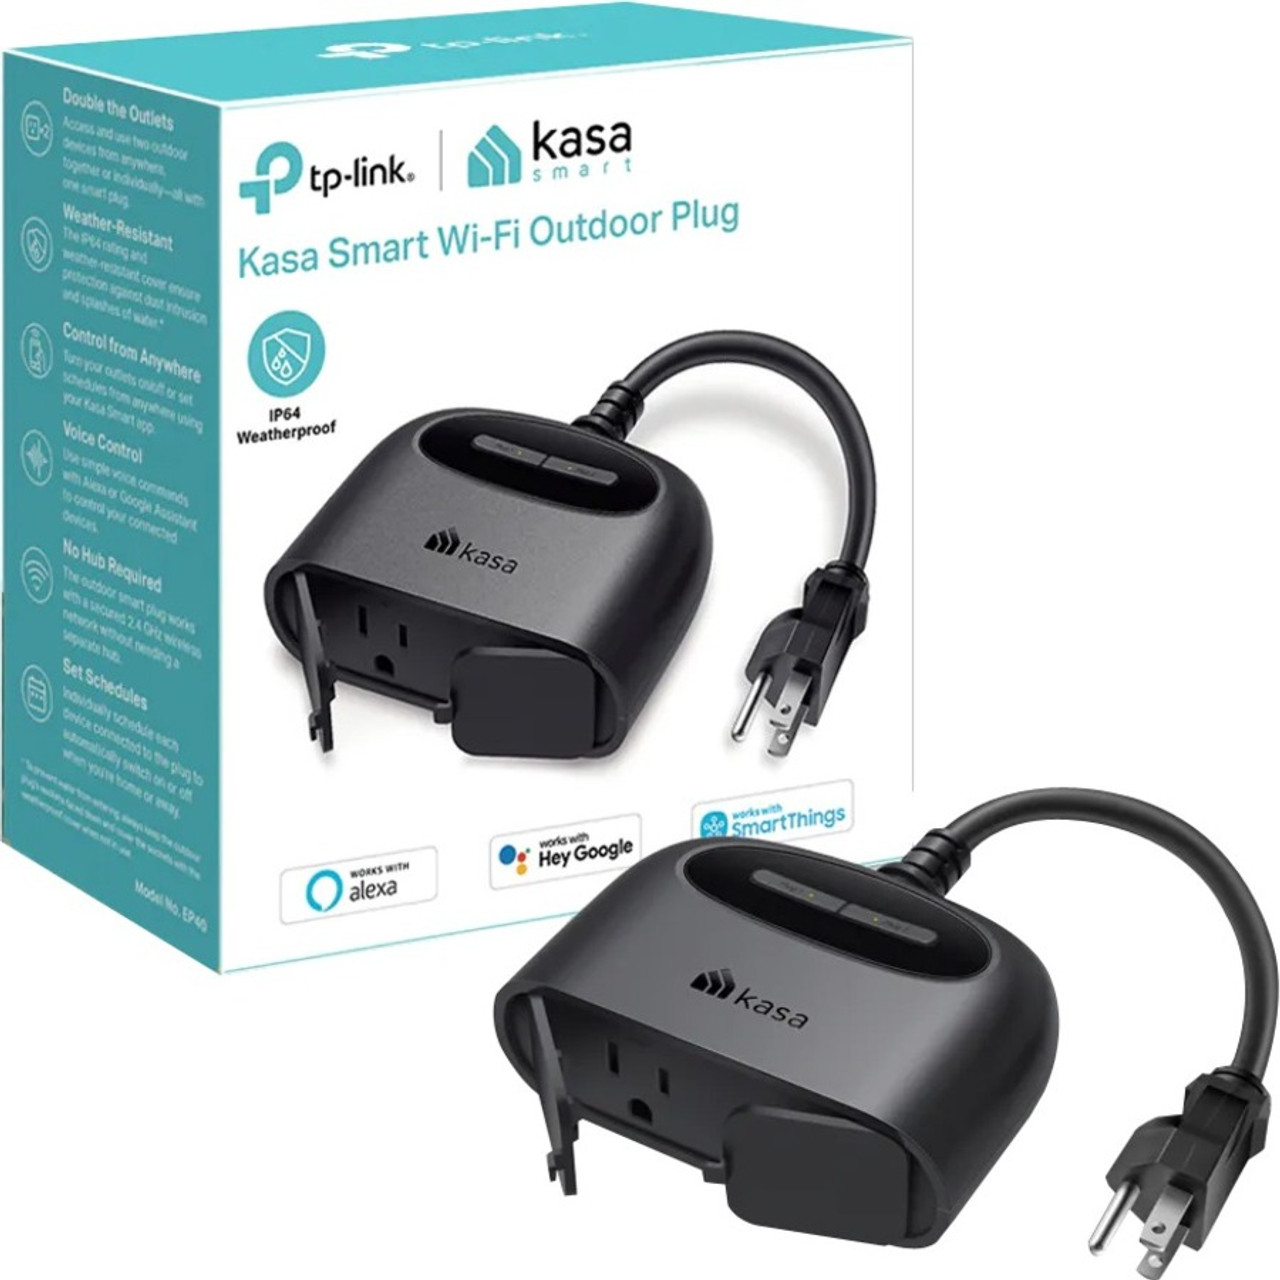 Kasa Outdoor Smart Plug Review & Setup - EP40 